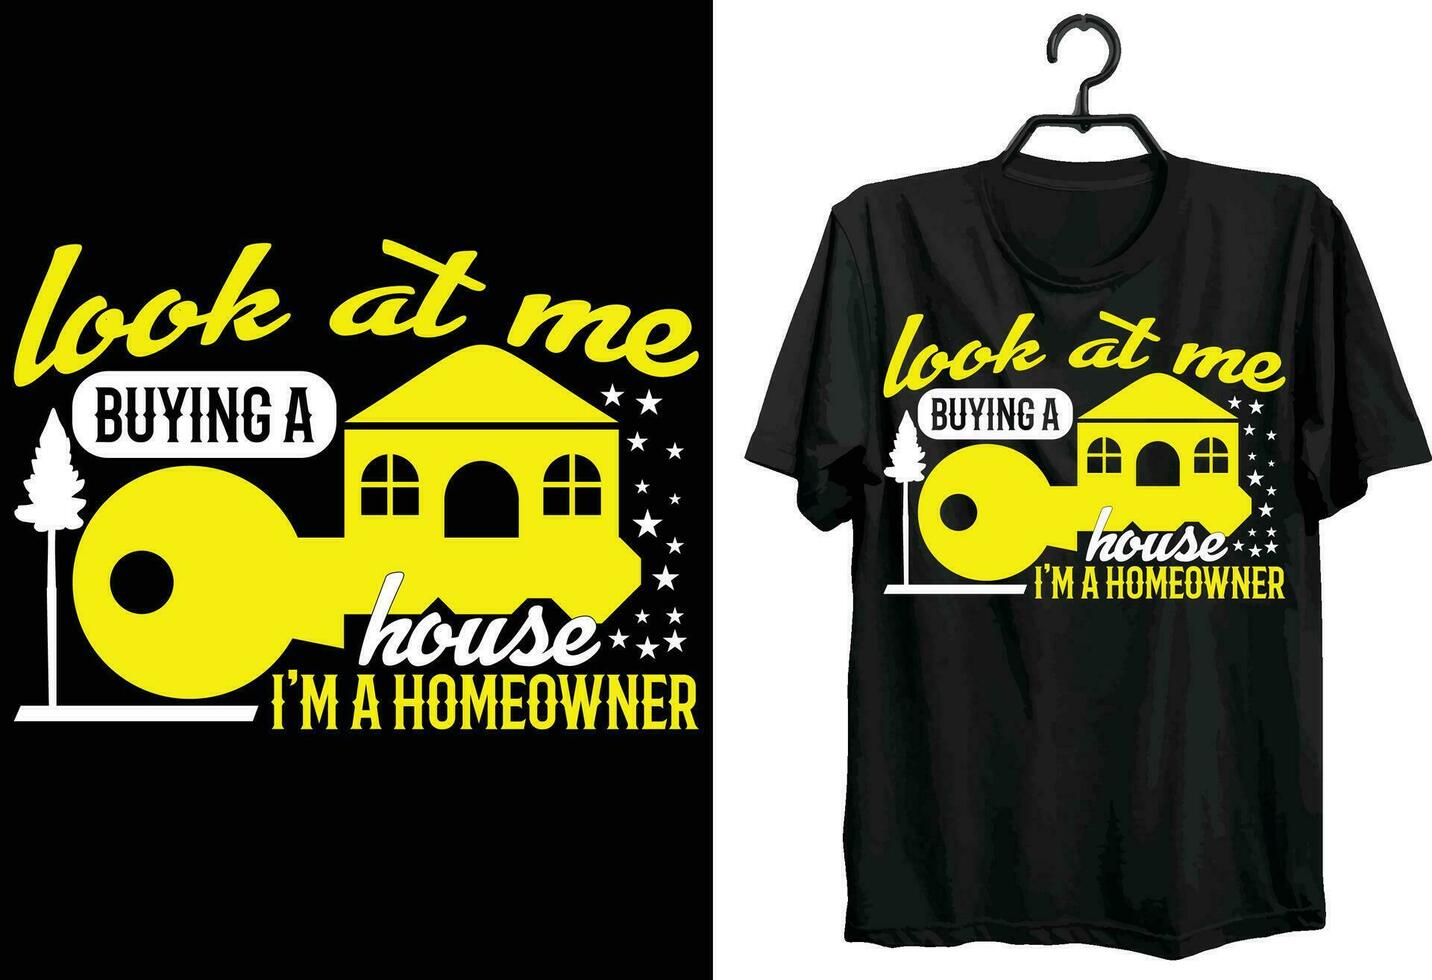 kijken Bij me buying een huis ik ben een huiseigenaar. huiseigenaar t-shirt ontwerp. grappig geschenk item huiseigenaar t-shirt ontwerp voor huiseigenaar. vector